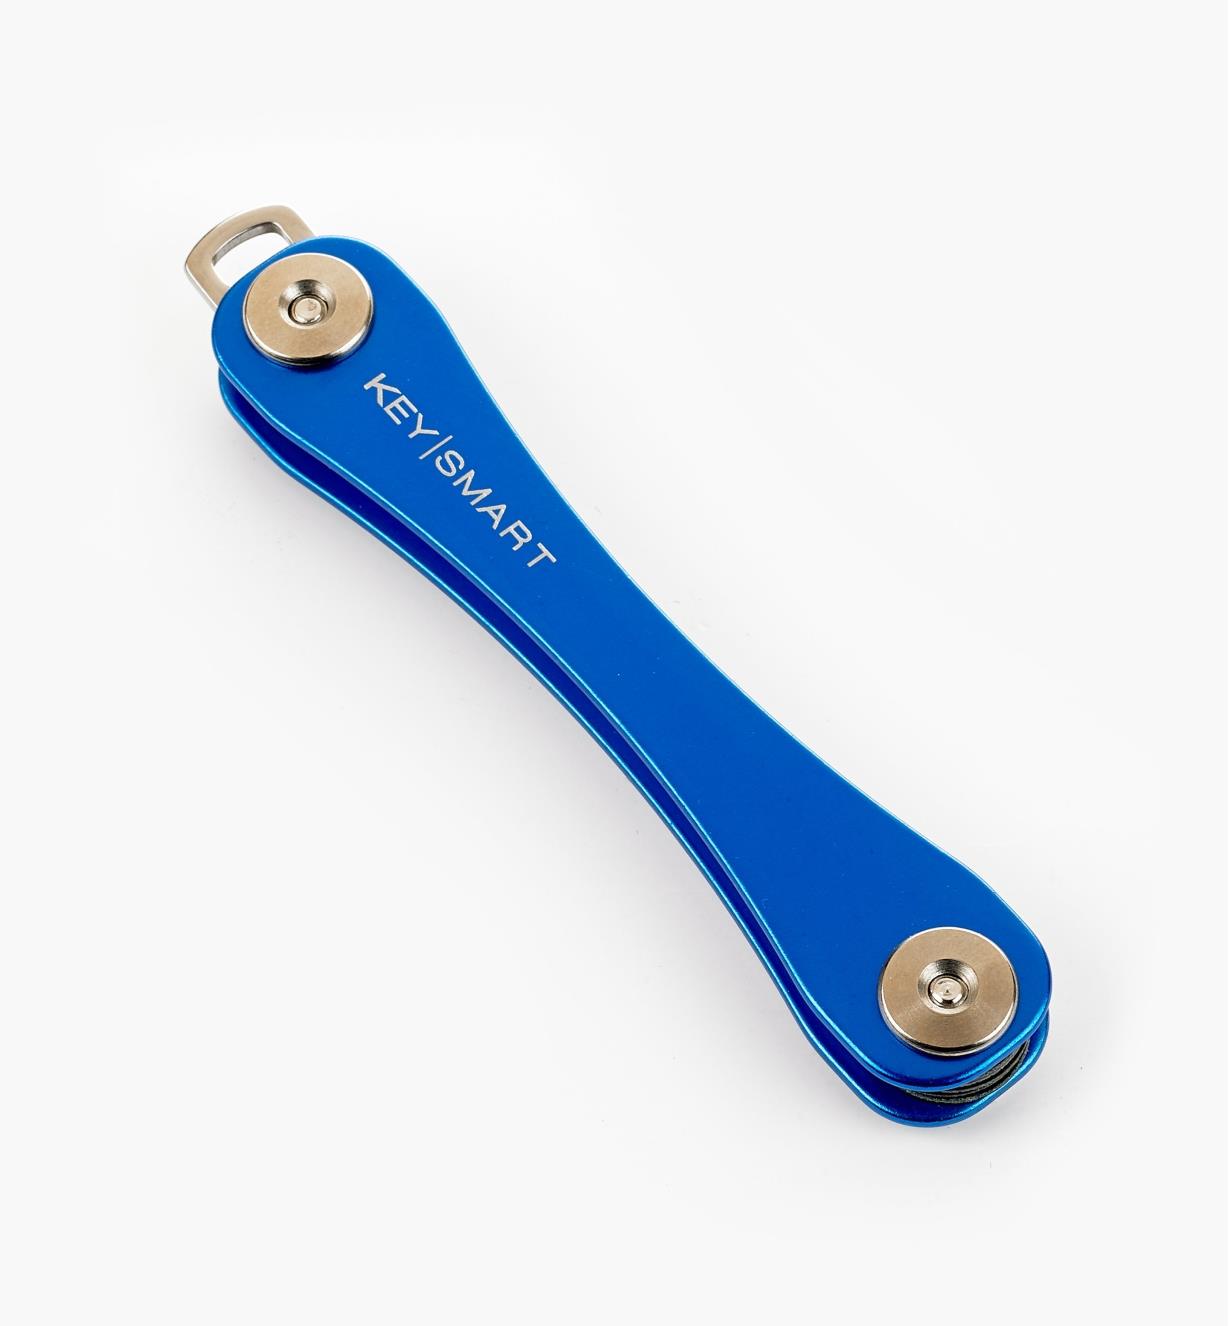 45K0751 - Porte-clés standard KeySmart, 8 clés, bleu